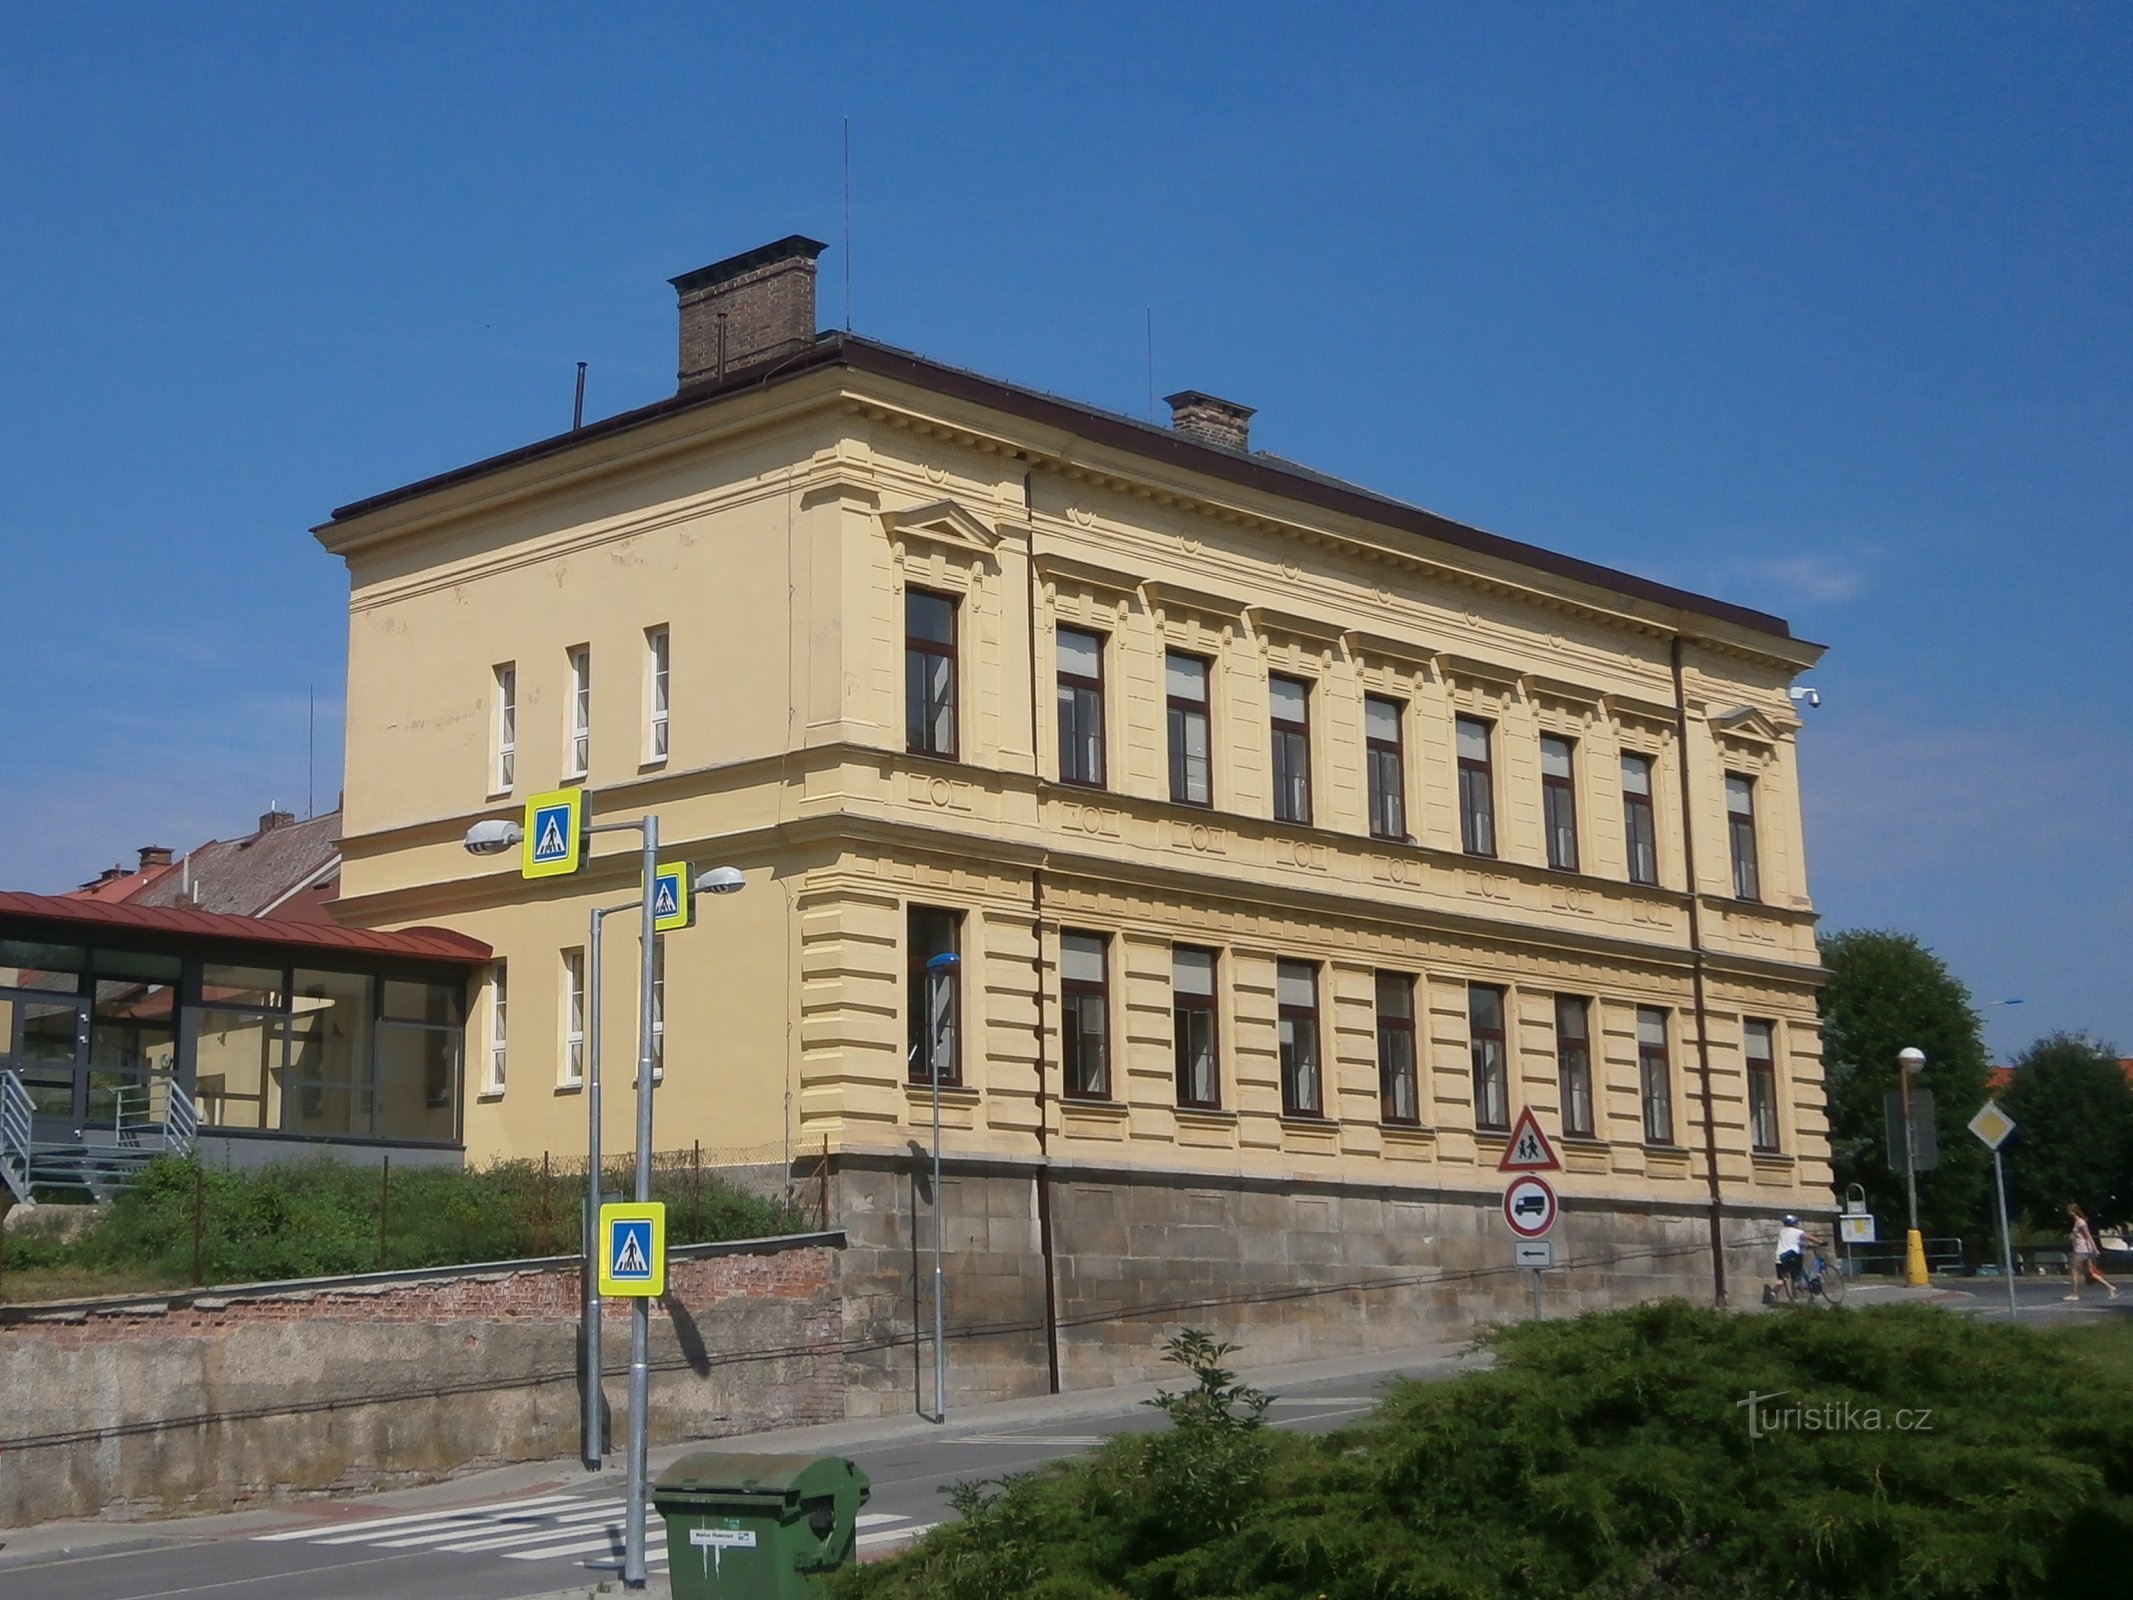 Antigua escuela municipal n.° 43-44 (Česká Skalice, 5.7.2017 de julio de XNUMX)